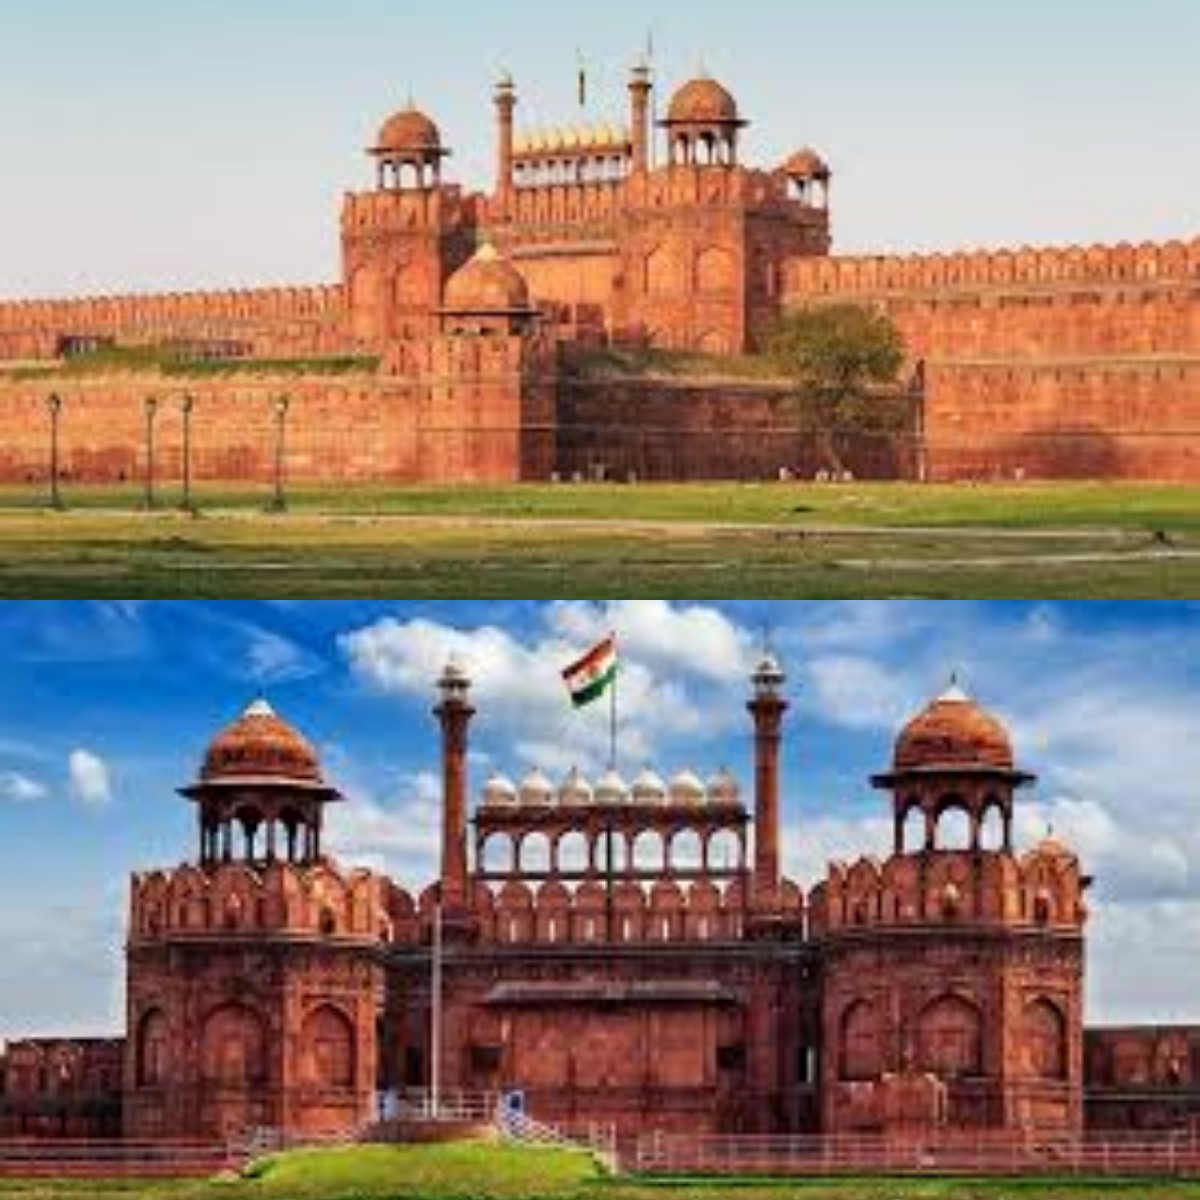 Dibalik Keindahannya! Inilah Sejarah Benteng Merah Bangunan Peninggalan di India